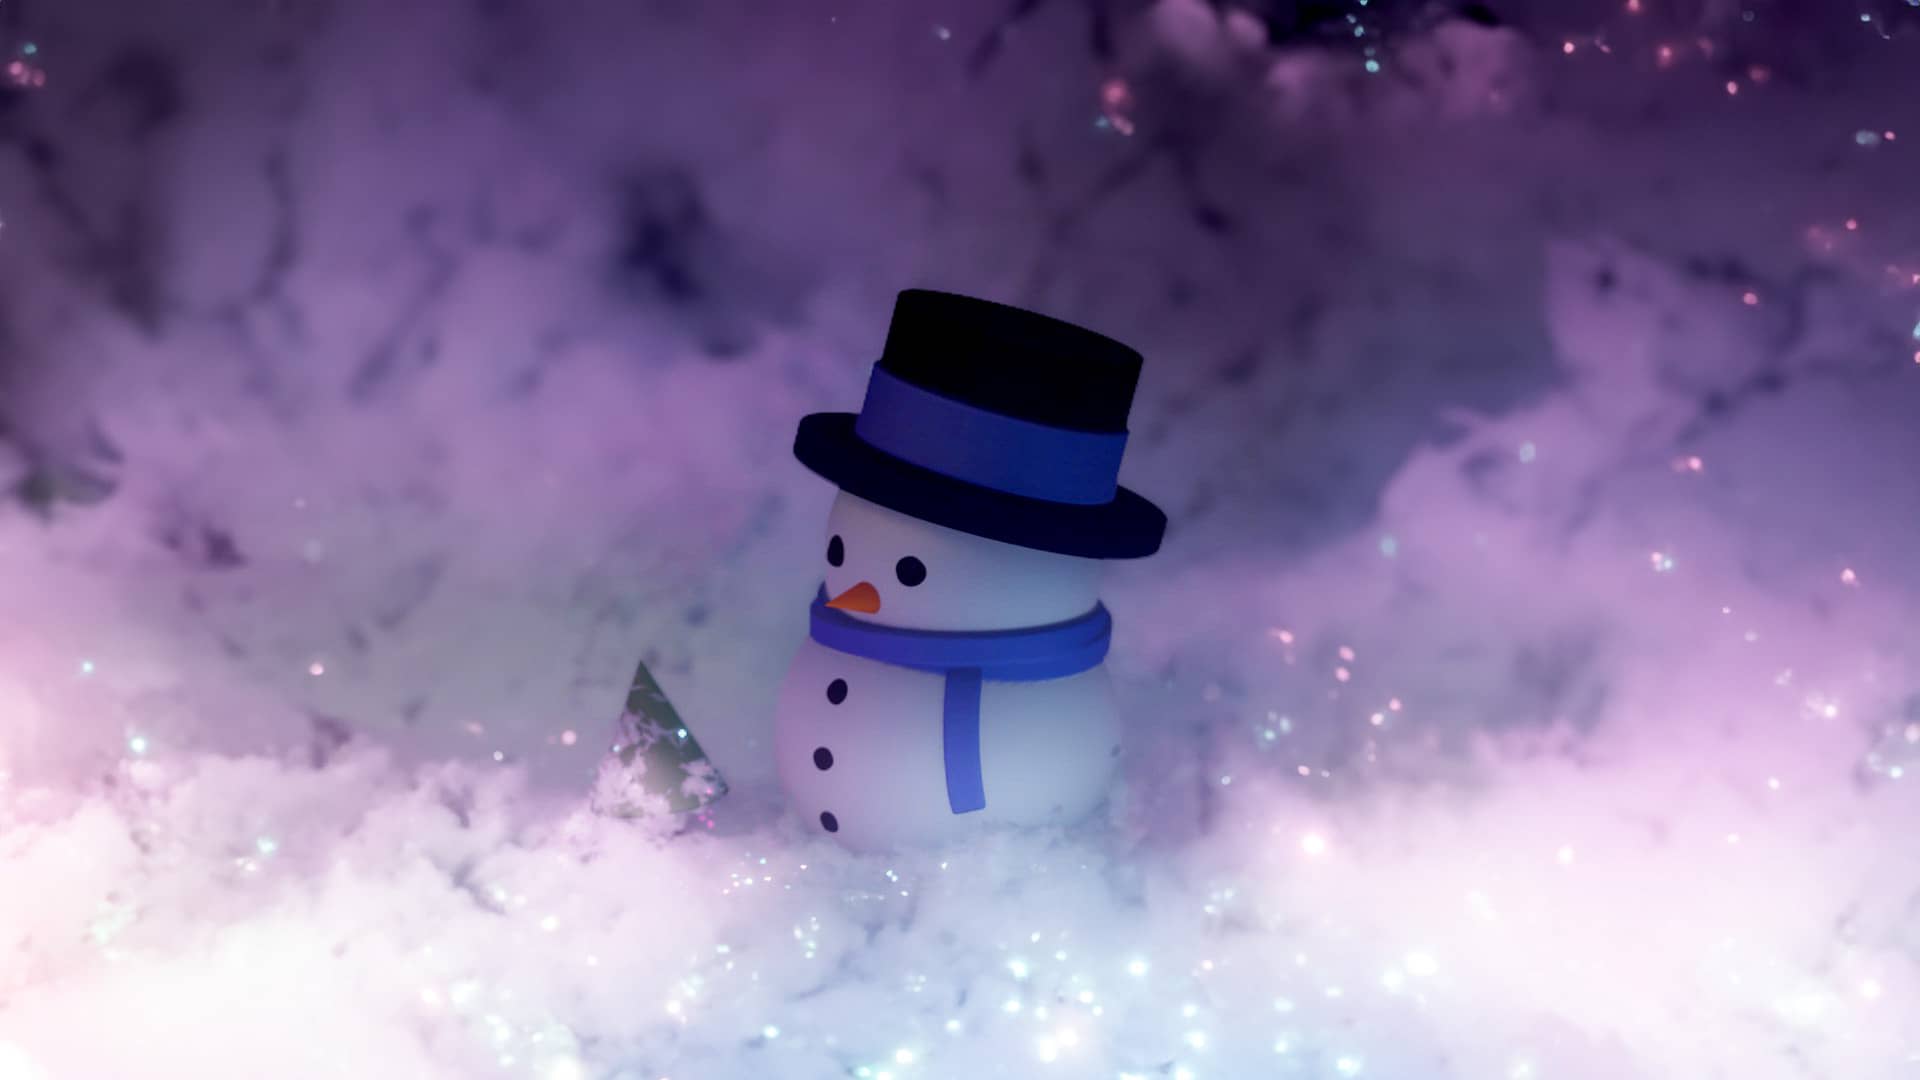 Bonhomme de neige miniature dans la neige